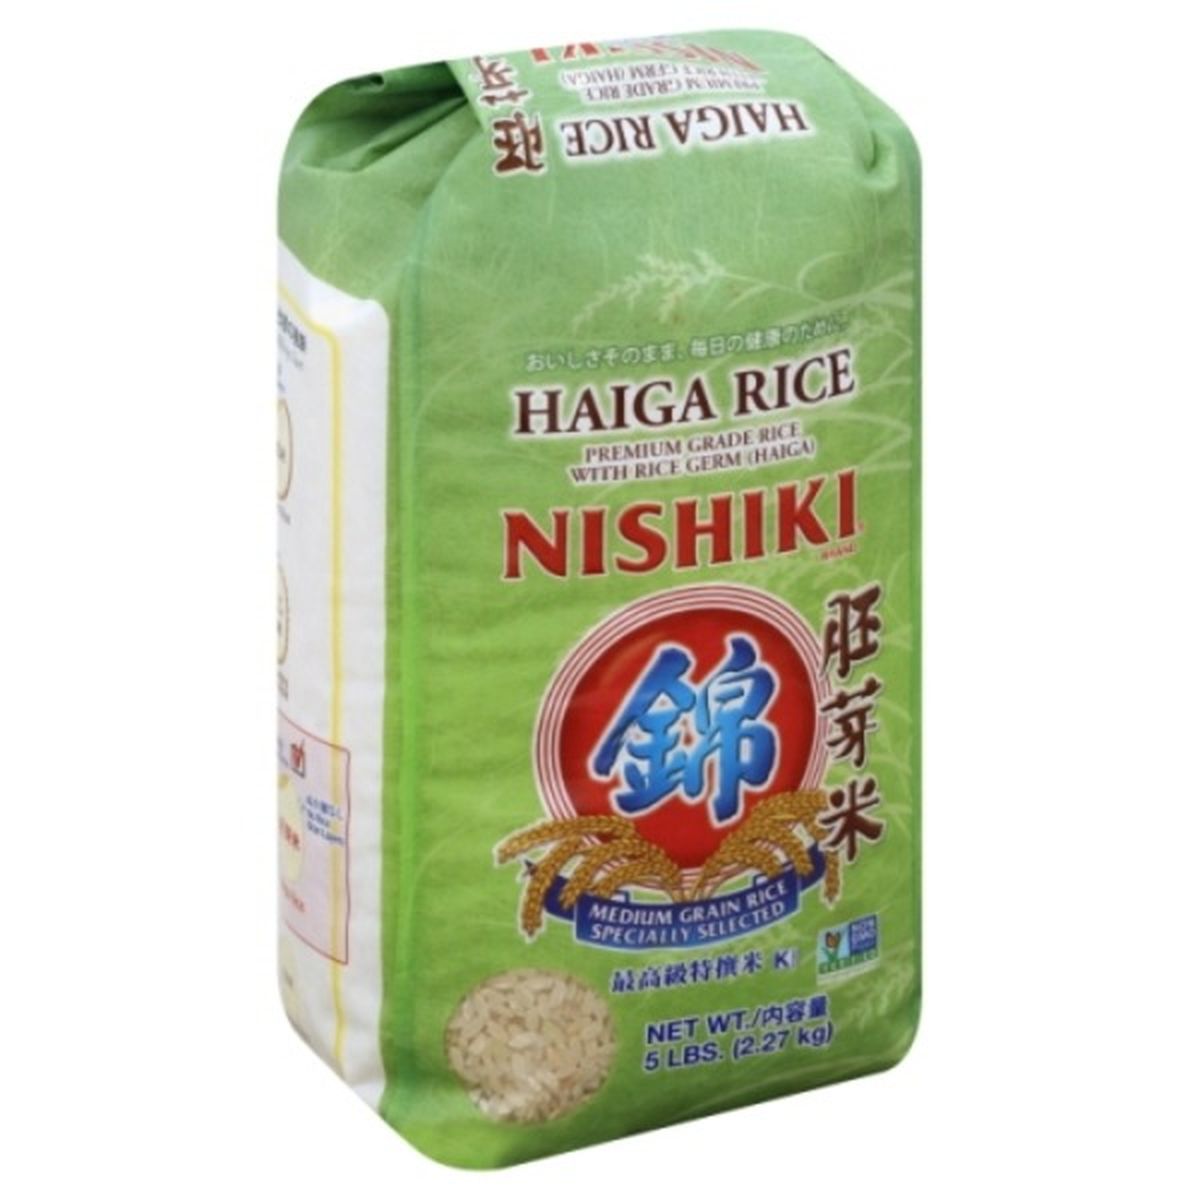 Calories in Nishiki Rice, Haiga, Medium Grain